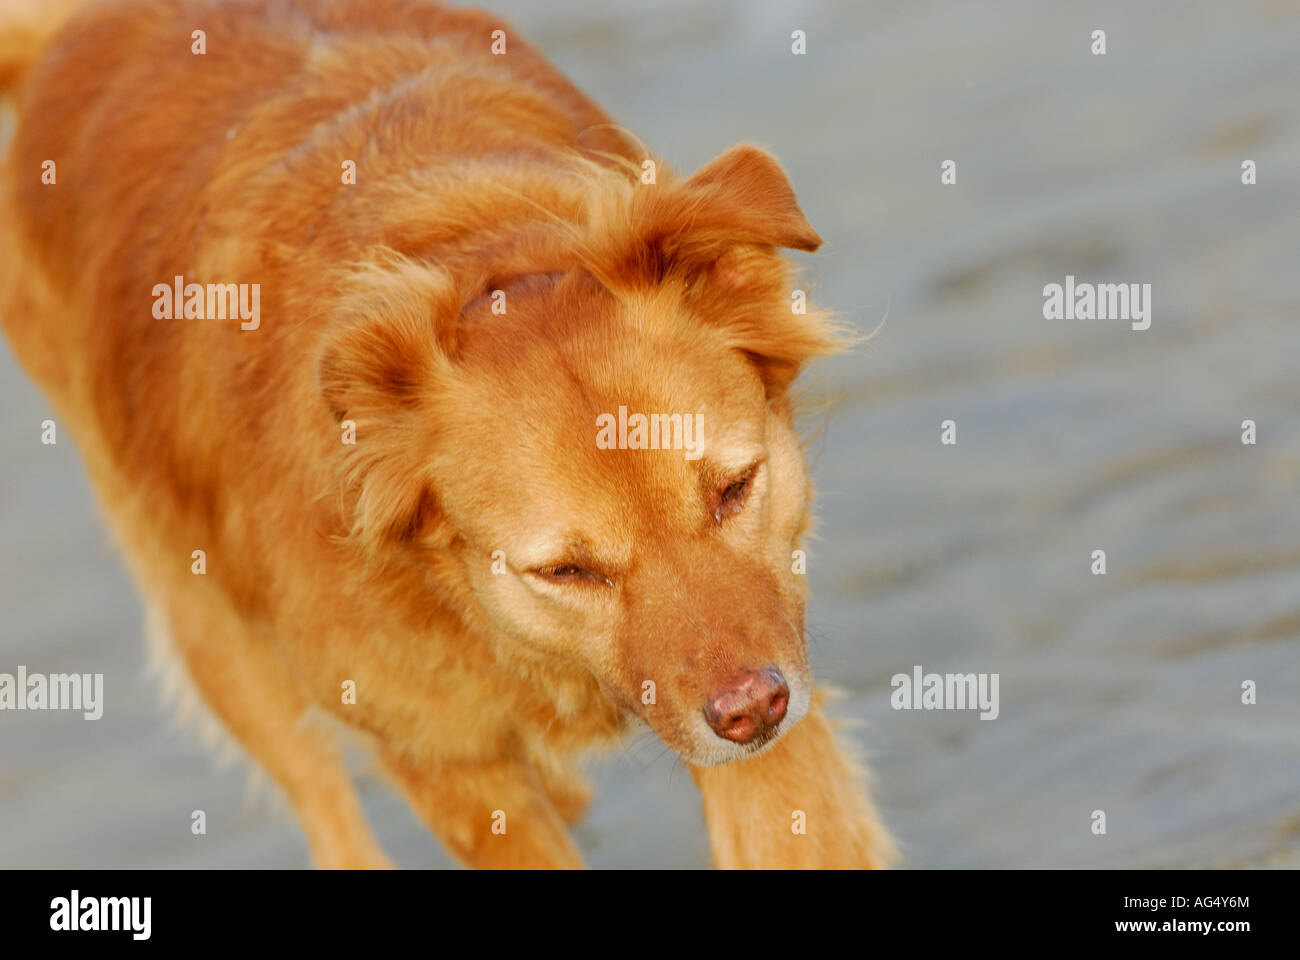 Hund am Strand mit einem goldenen Fell und gesunde keuchend aus Atem Hundewiesen glänzendes Fell Gassi Stockfoto